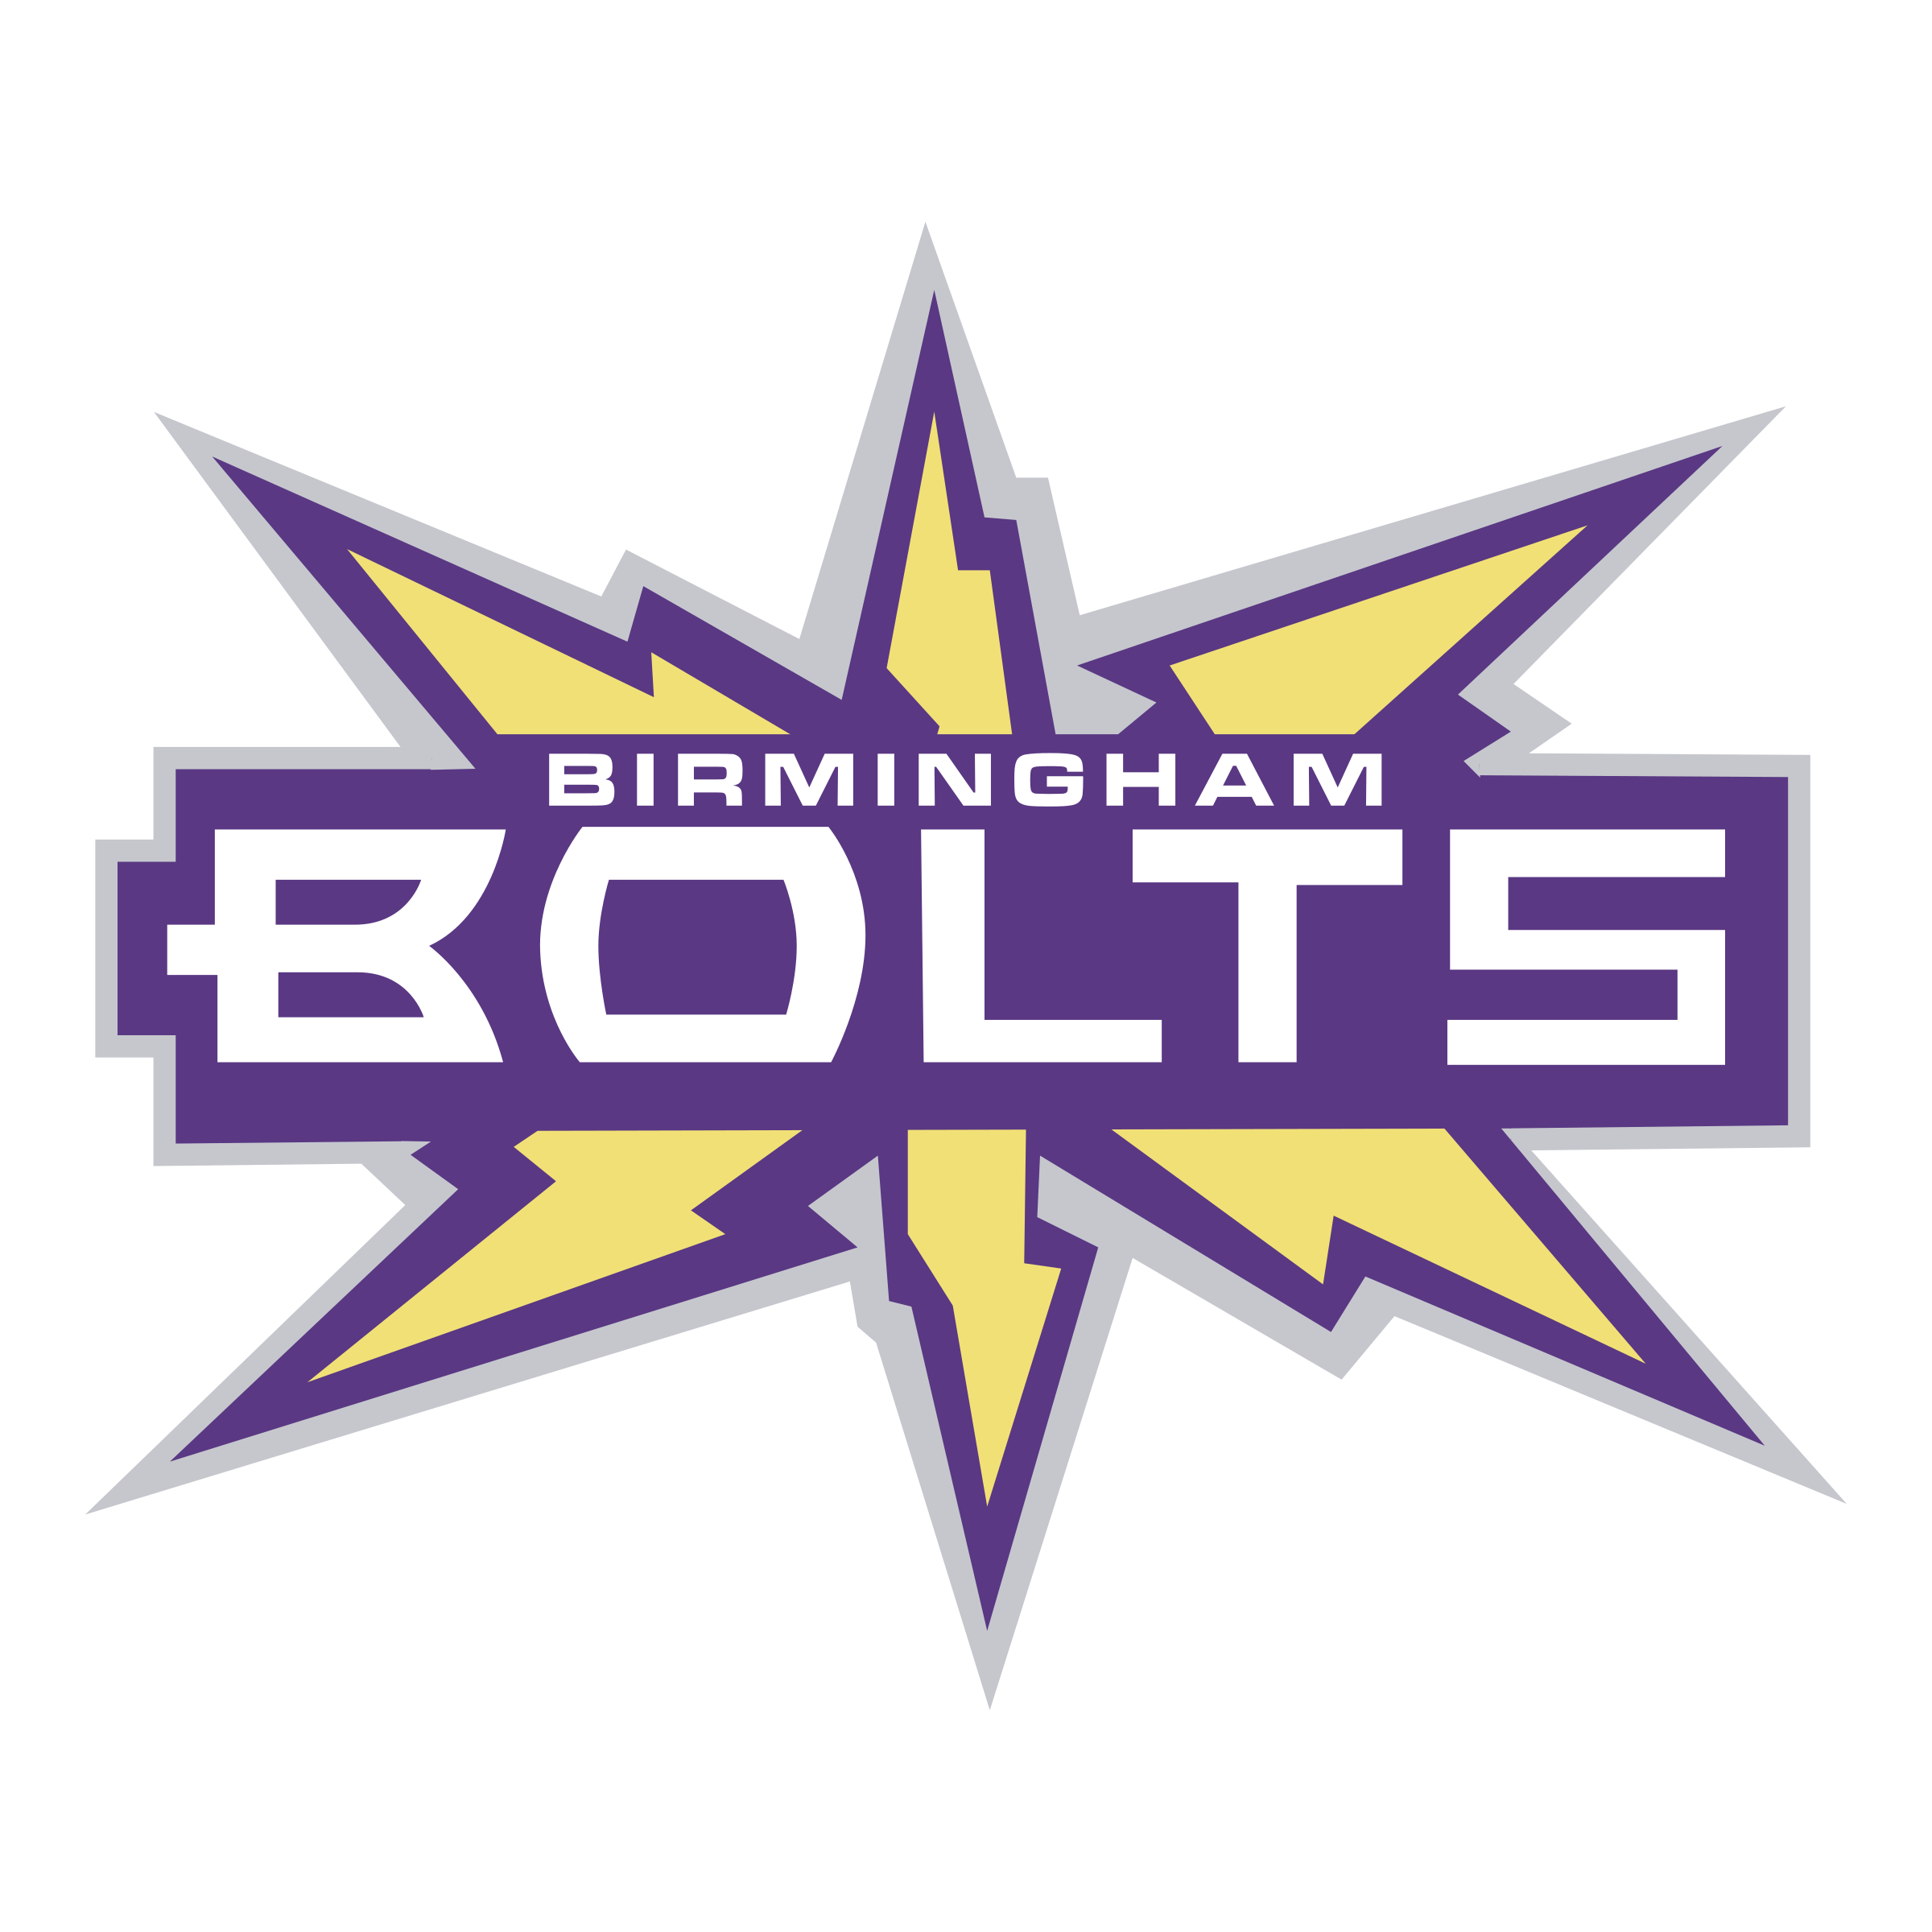 Bolts Logo - Birmingham Bolts Logo PNG Transparent & SVG Vector